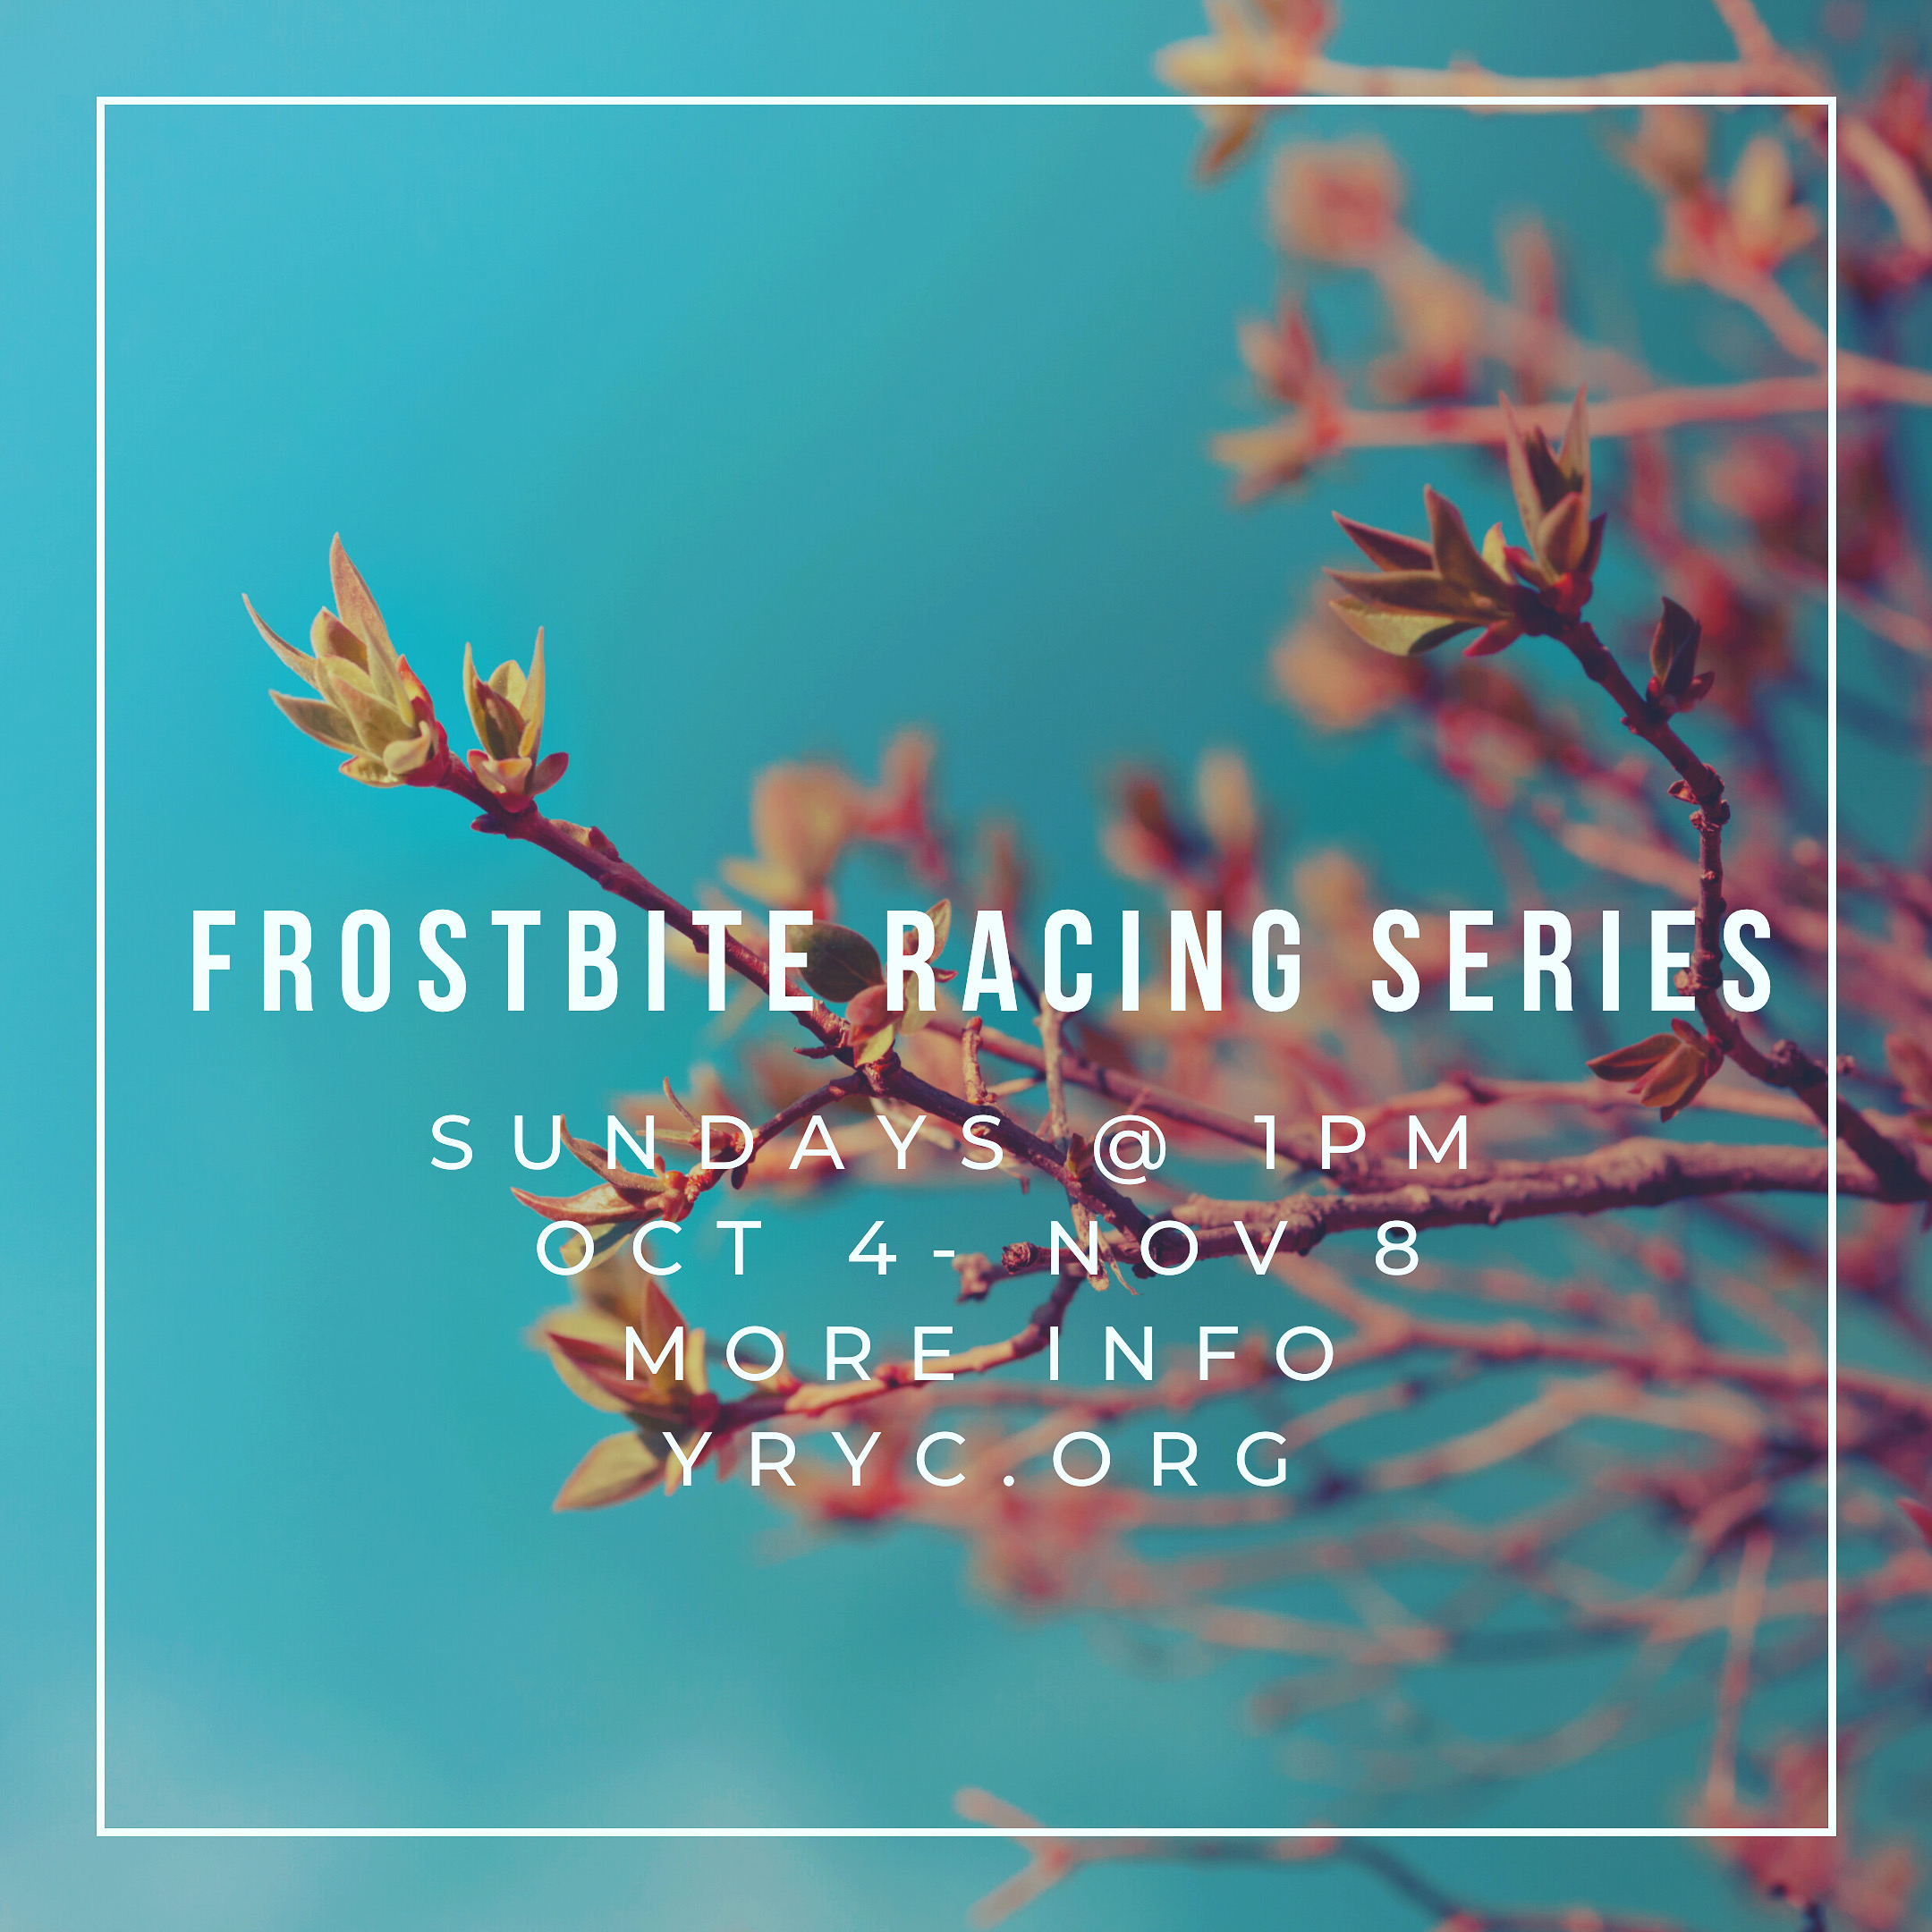 Frostbite Racing Series